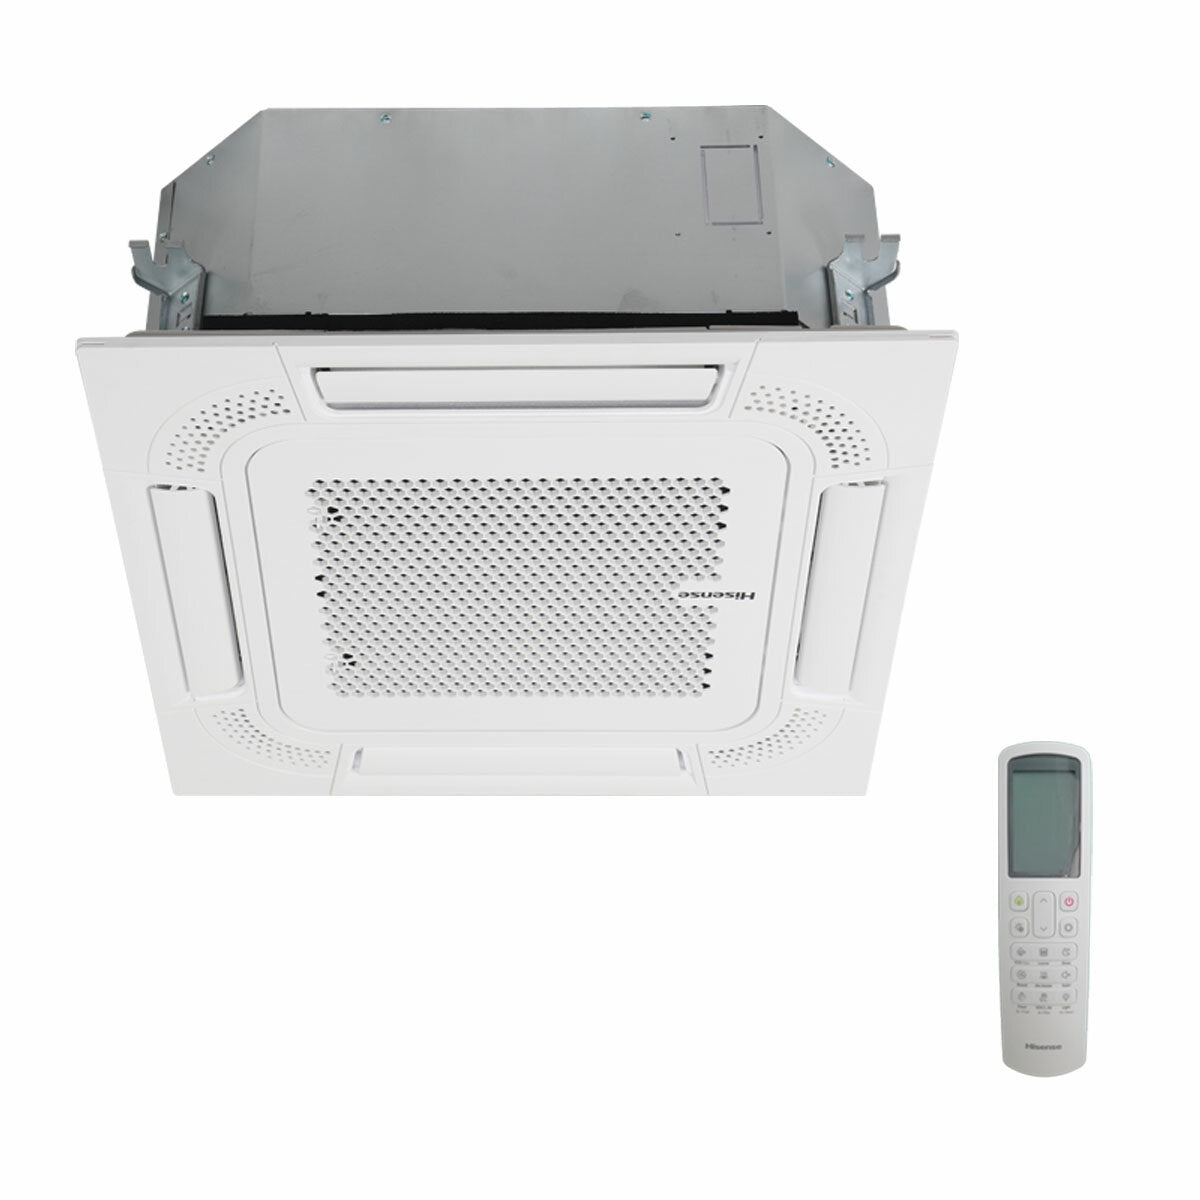 Hisense air conditioner ACT penta split 9000+9000+9000+9000+18000 BTU inverter outdoor unit 12.5 kW